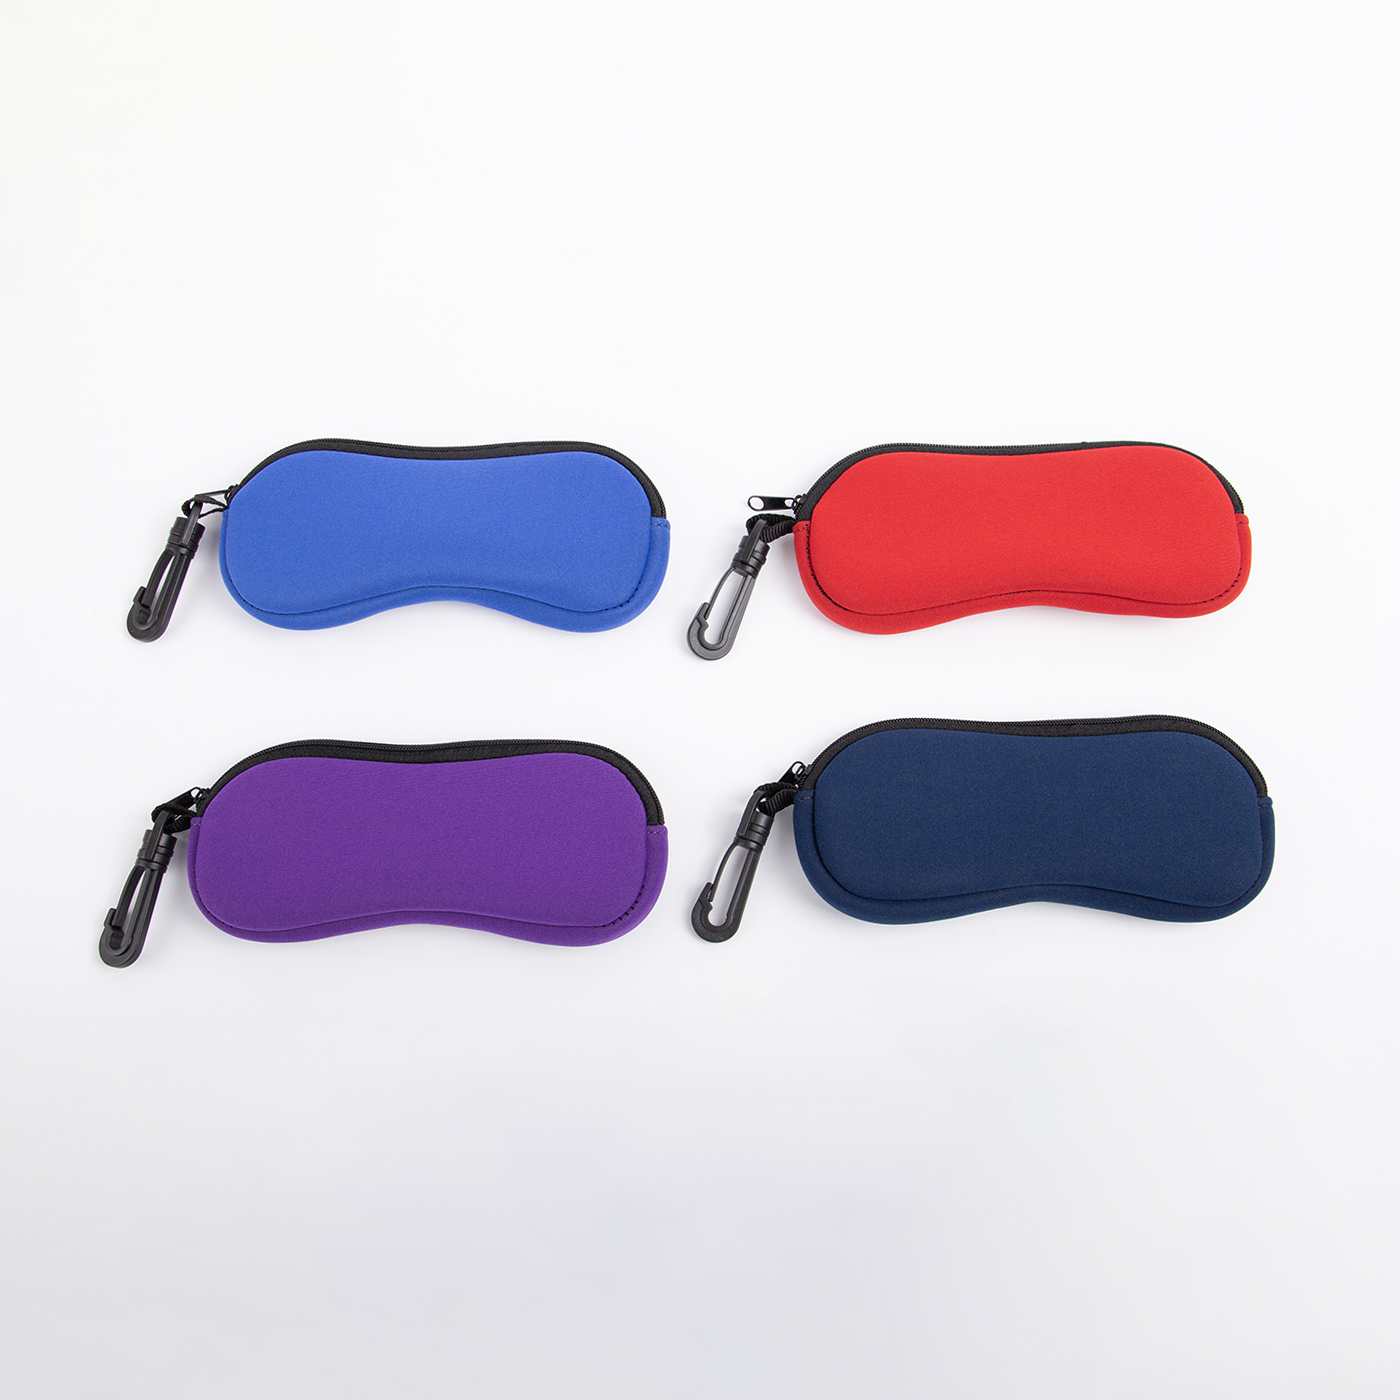 Custom Neoprene Eyeglasses Case With Carabiner4